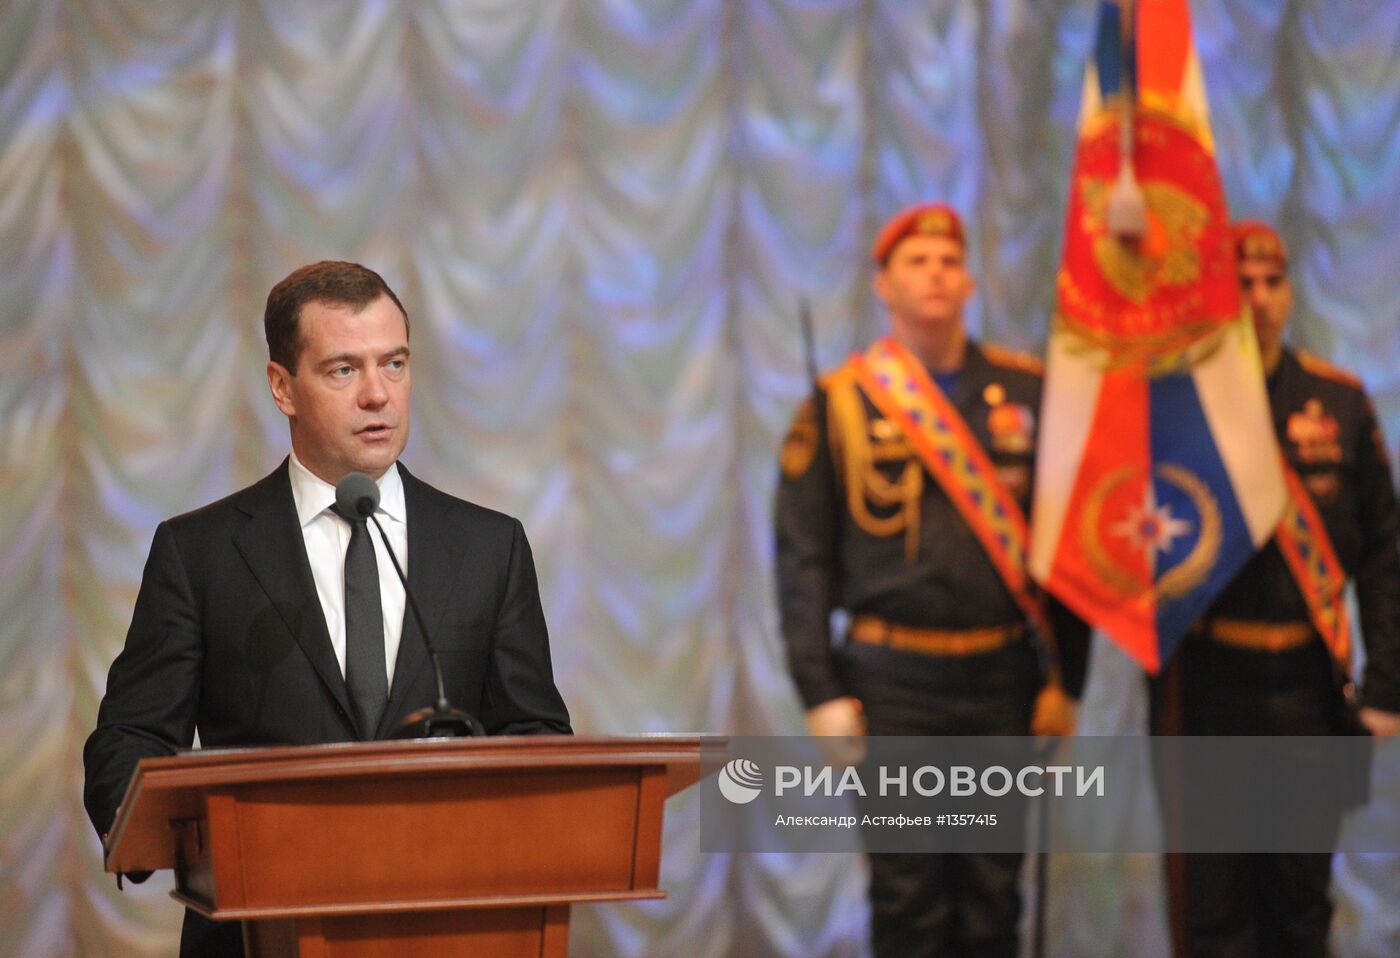 Д.Медведев на Всероссийском сборе руководящего состава МЧС